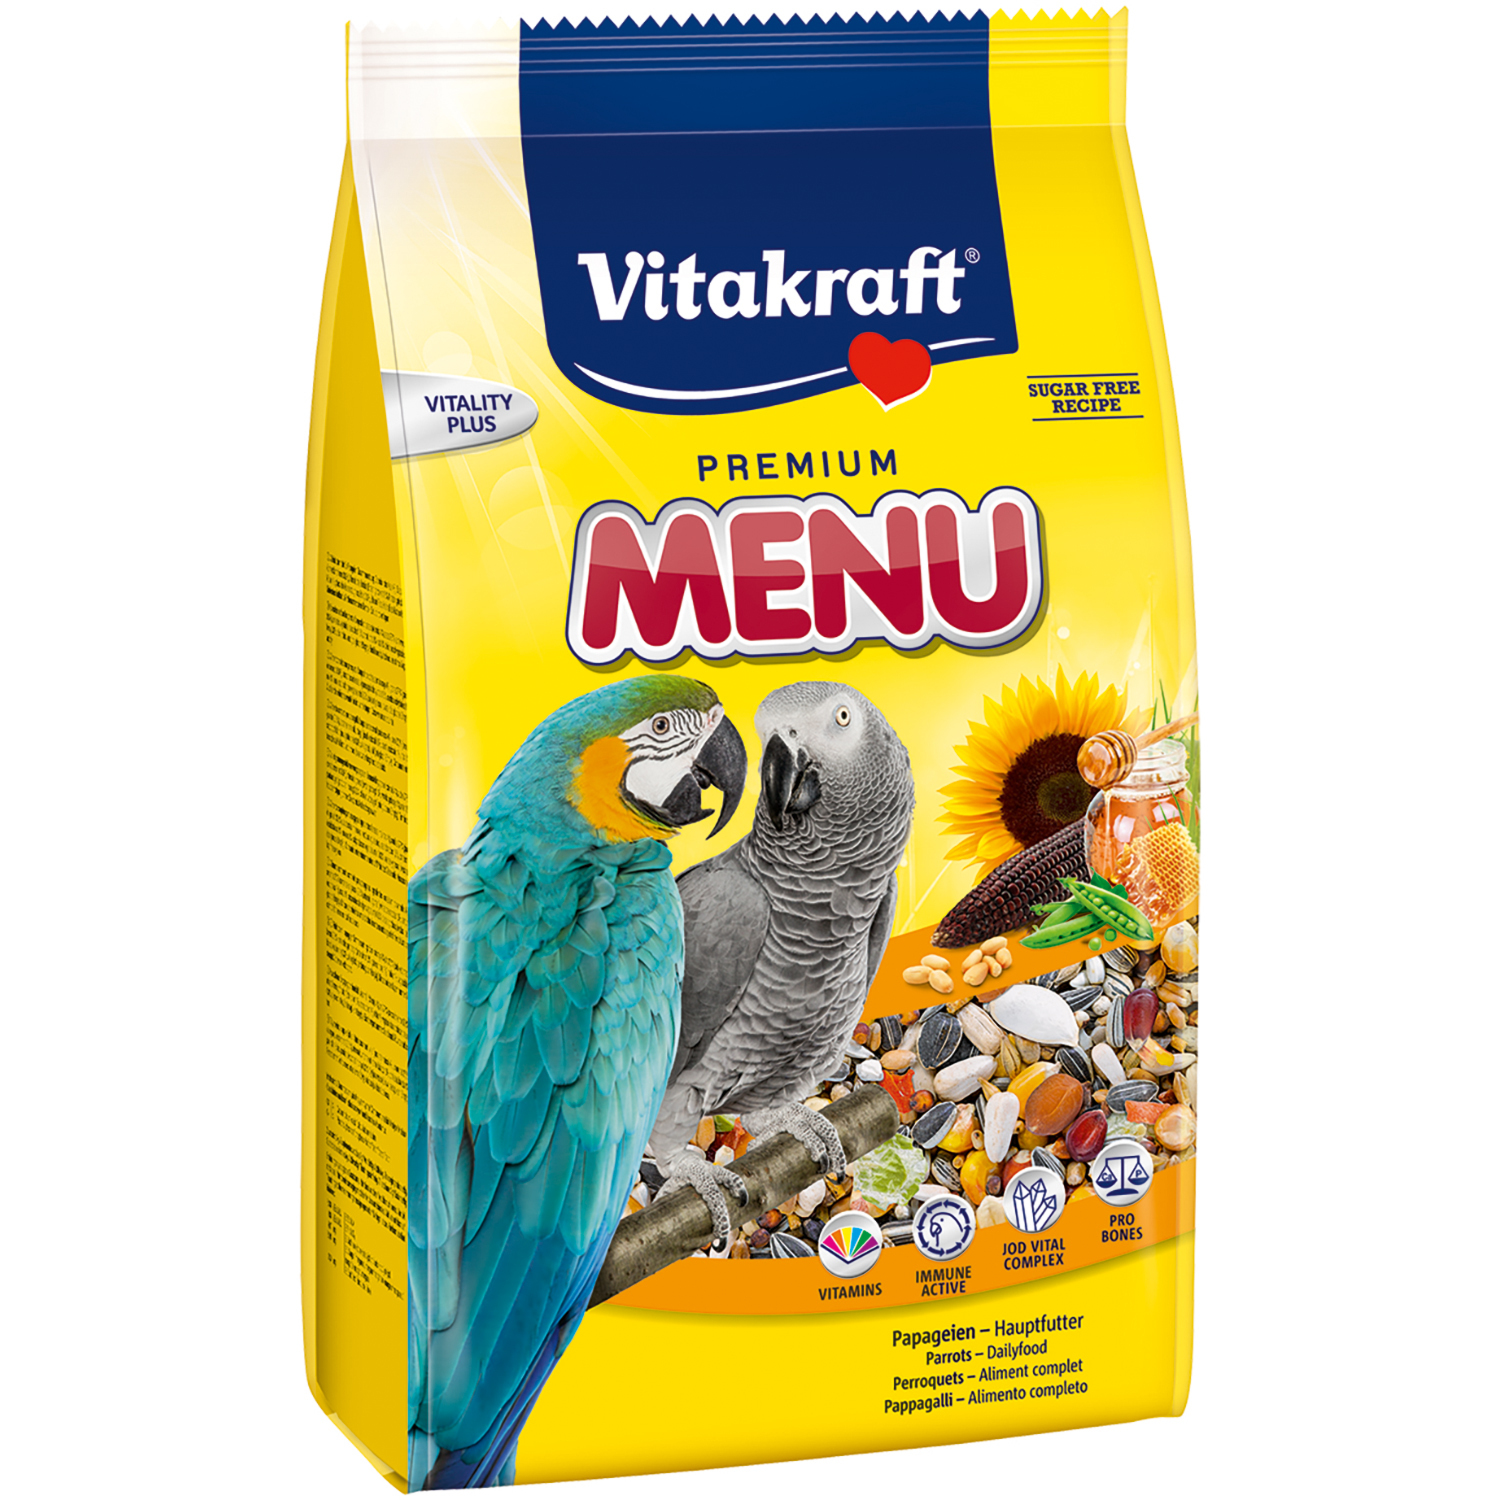 Vitakraft Parrot Premium Menu Food 1kg Image